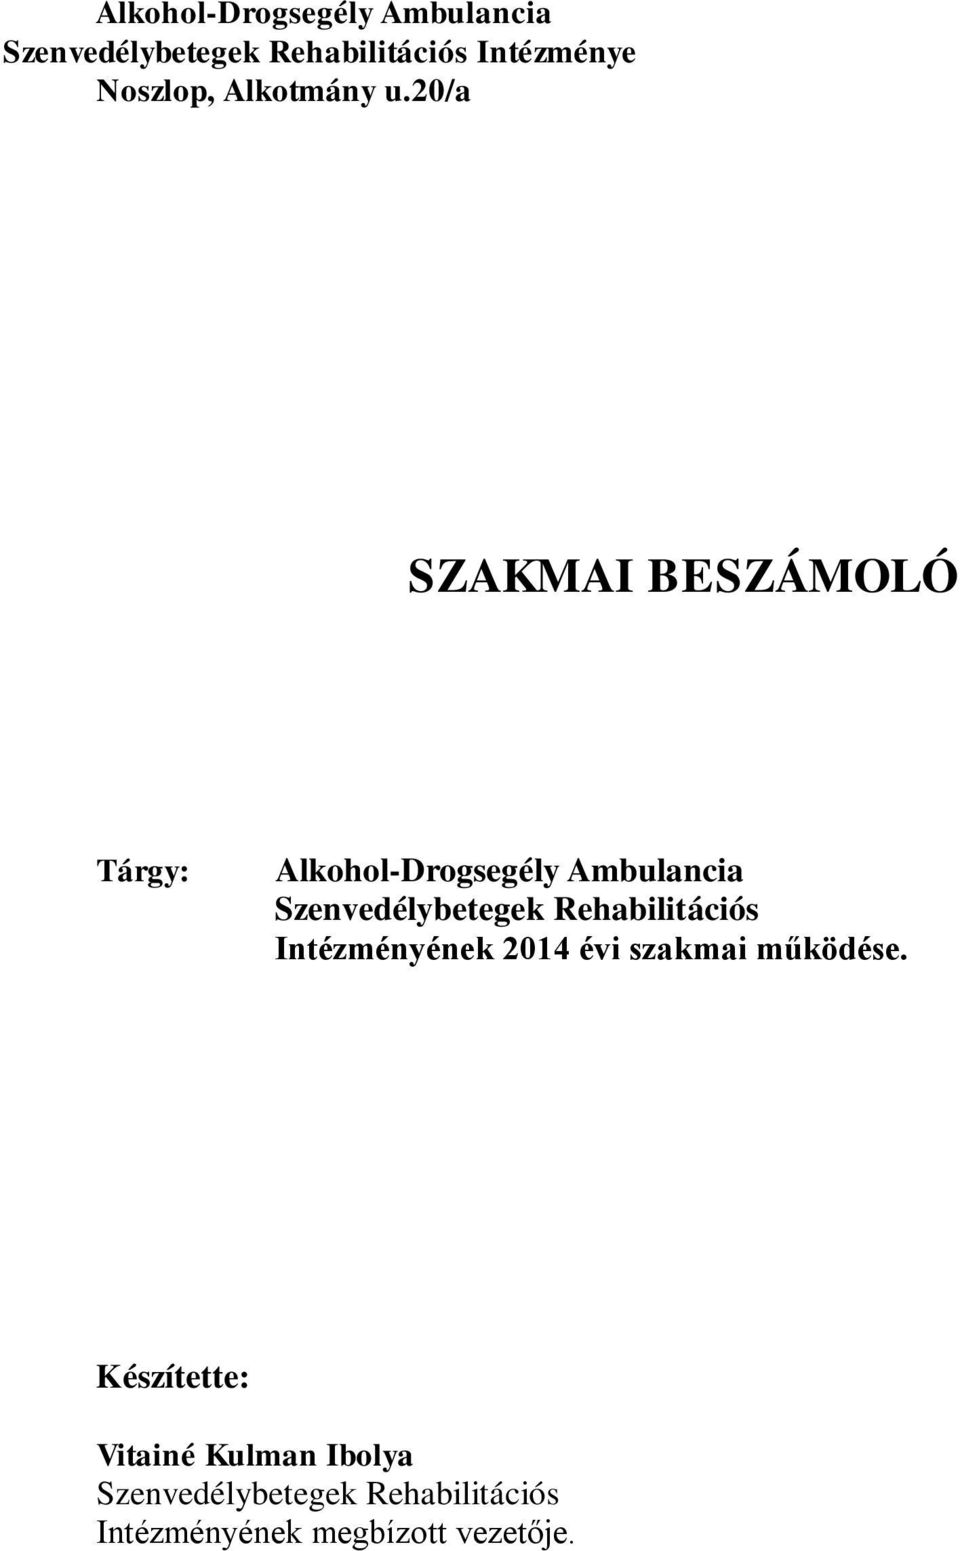 20/a SZAKMAI BESZÁMOLÓ Tárgy: Alkohol-Drogsegély Ambulancia Szenvedélybetegek